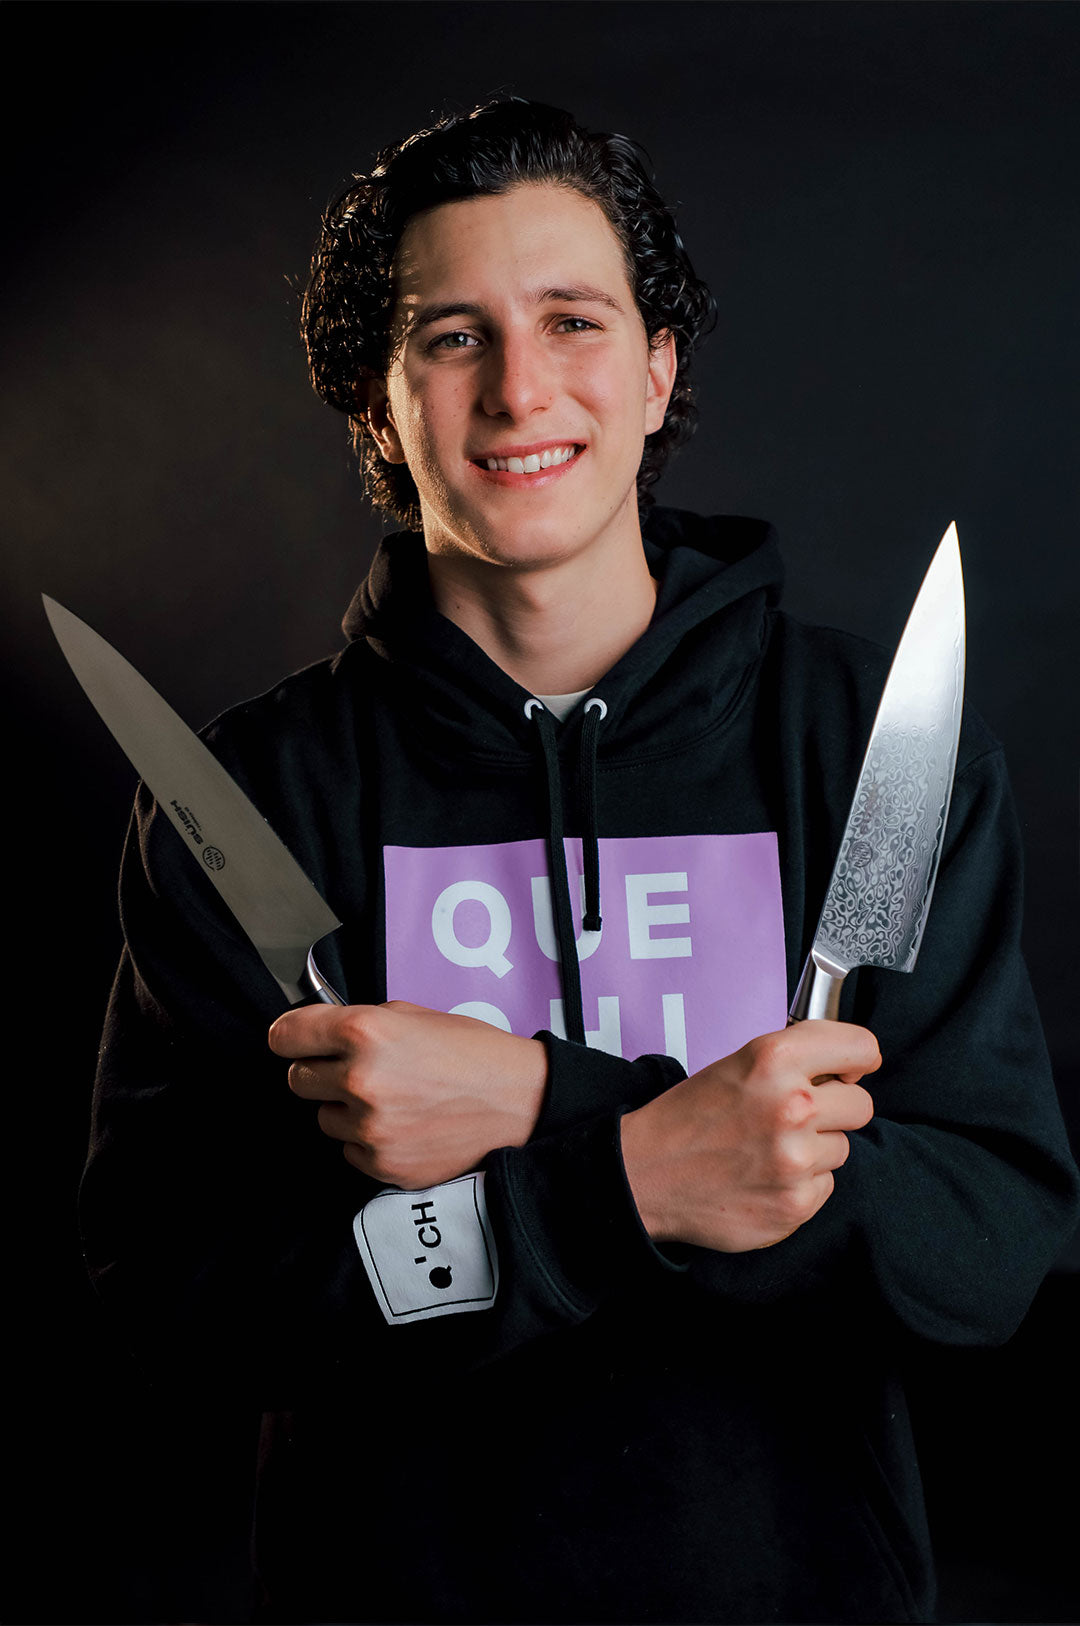 Roberto Morales influencer de tiktok con el cuchillo de chef y cuchillo damasco de la linea süish by robegrill "the sound of cooking" 